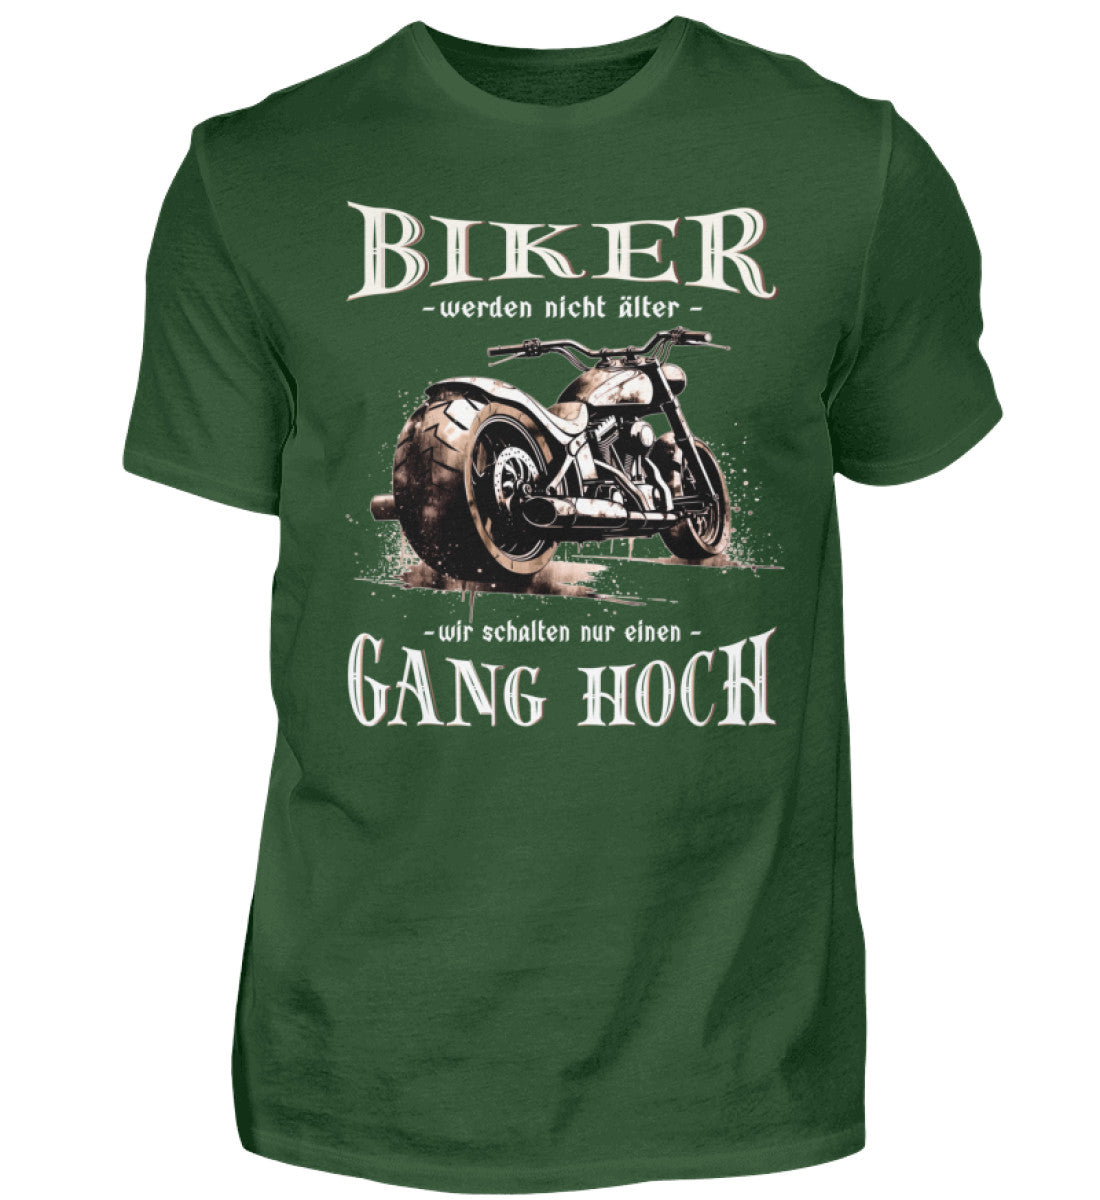 Ein Biker T-Shirt für Motorradfahrer von Wingbikers mit dem Aufdruck, Biker werden nicht älter - Wir schalten nur einen Gang hoch! - in dunkelgrün.